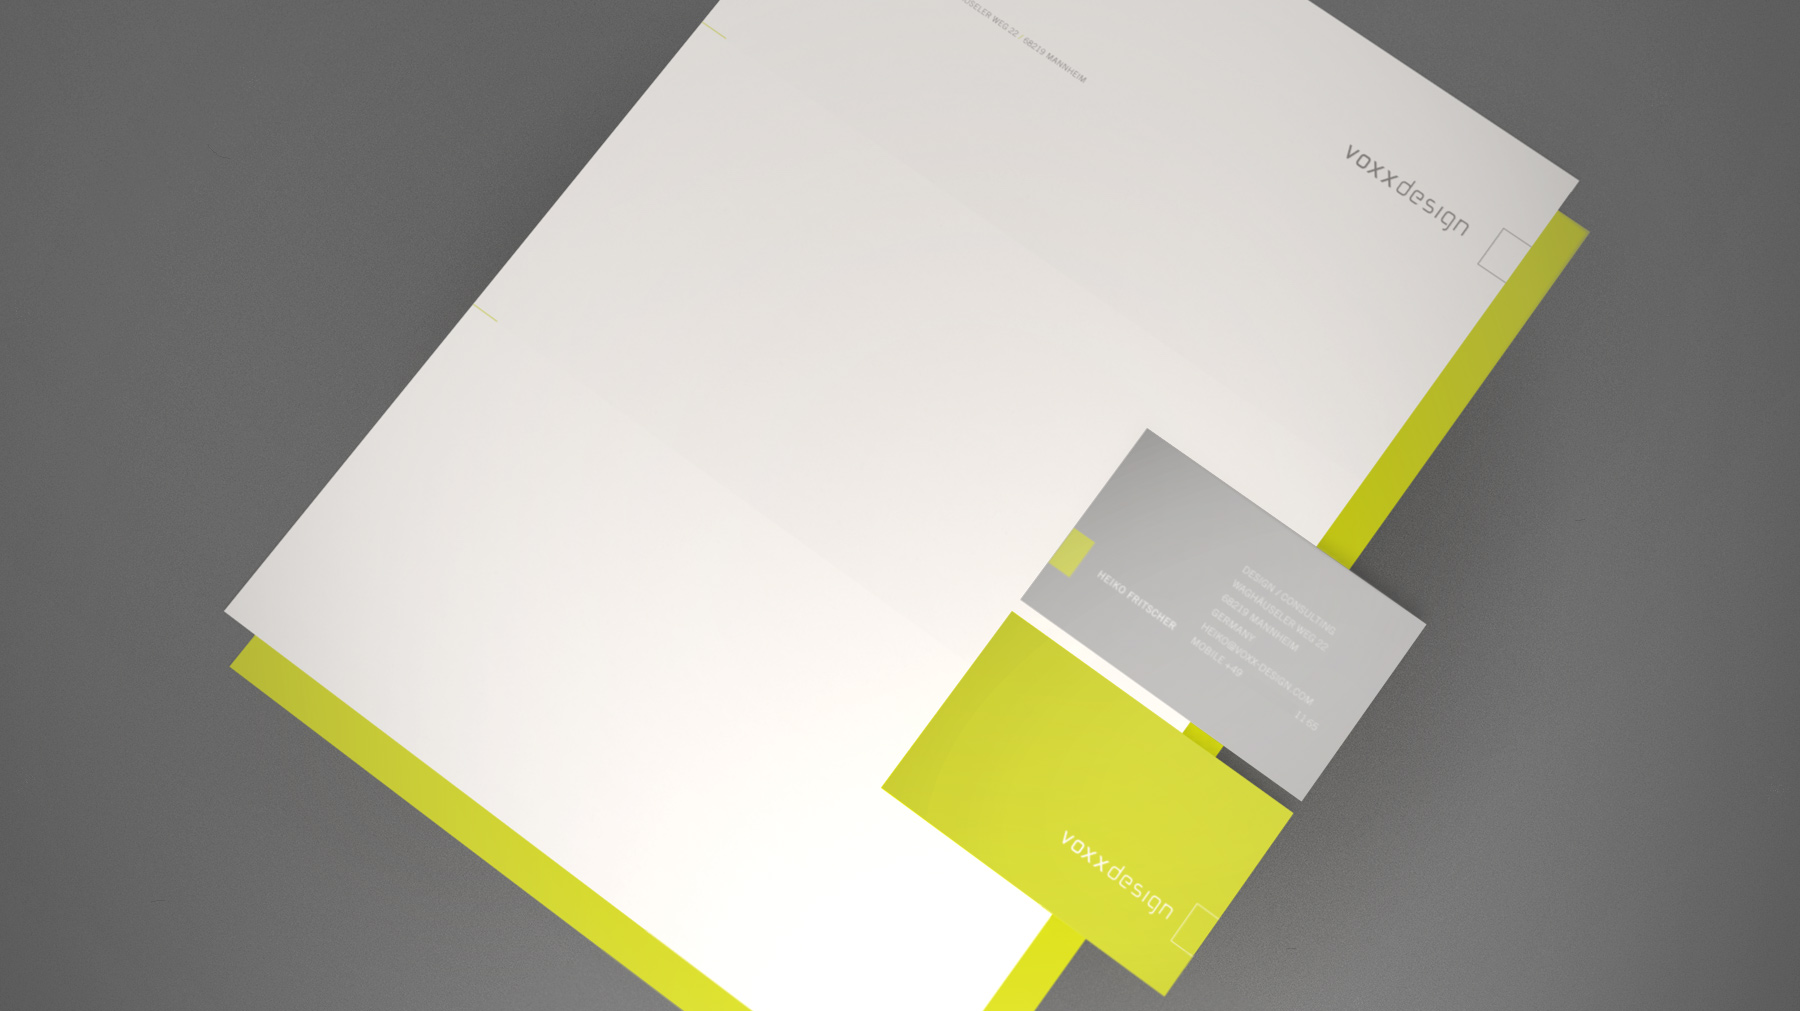 Briefbogengestaltung für voxx design | Mannheim | by Ilyas Susever